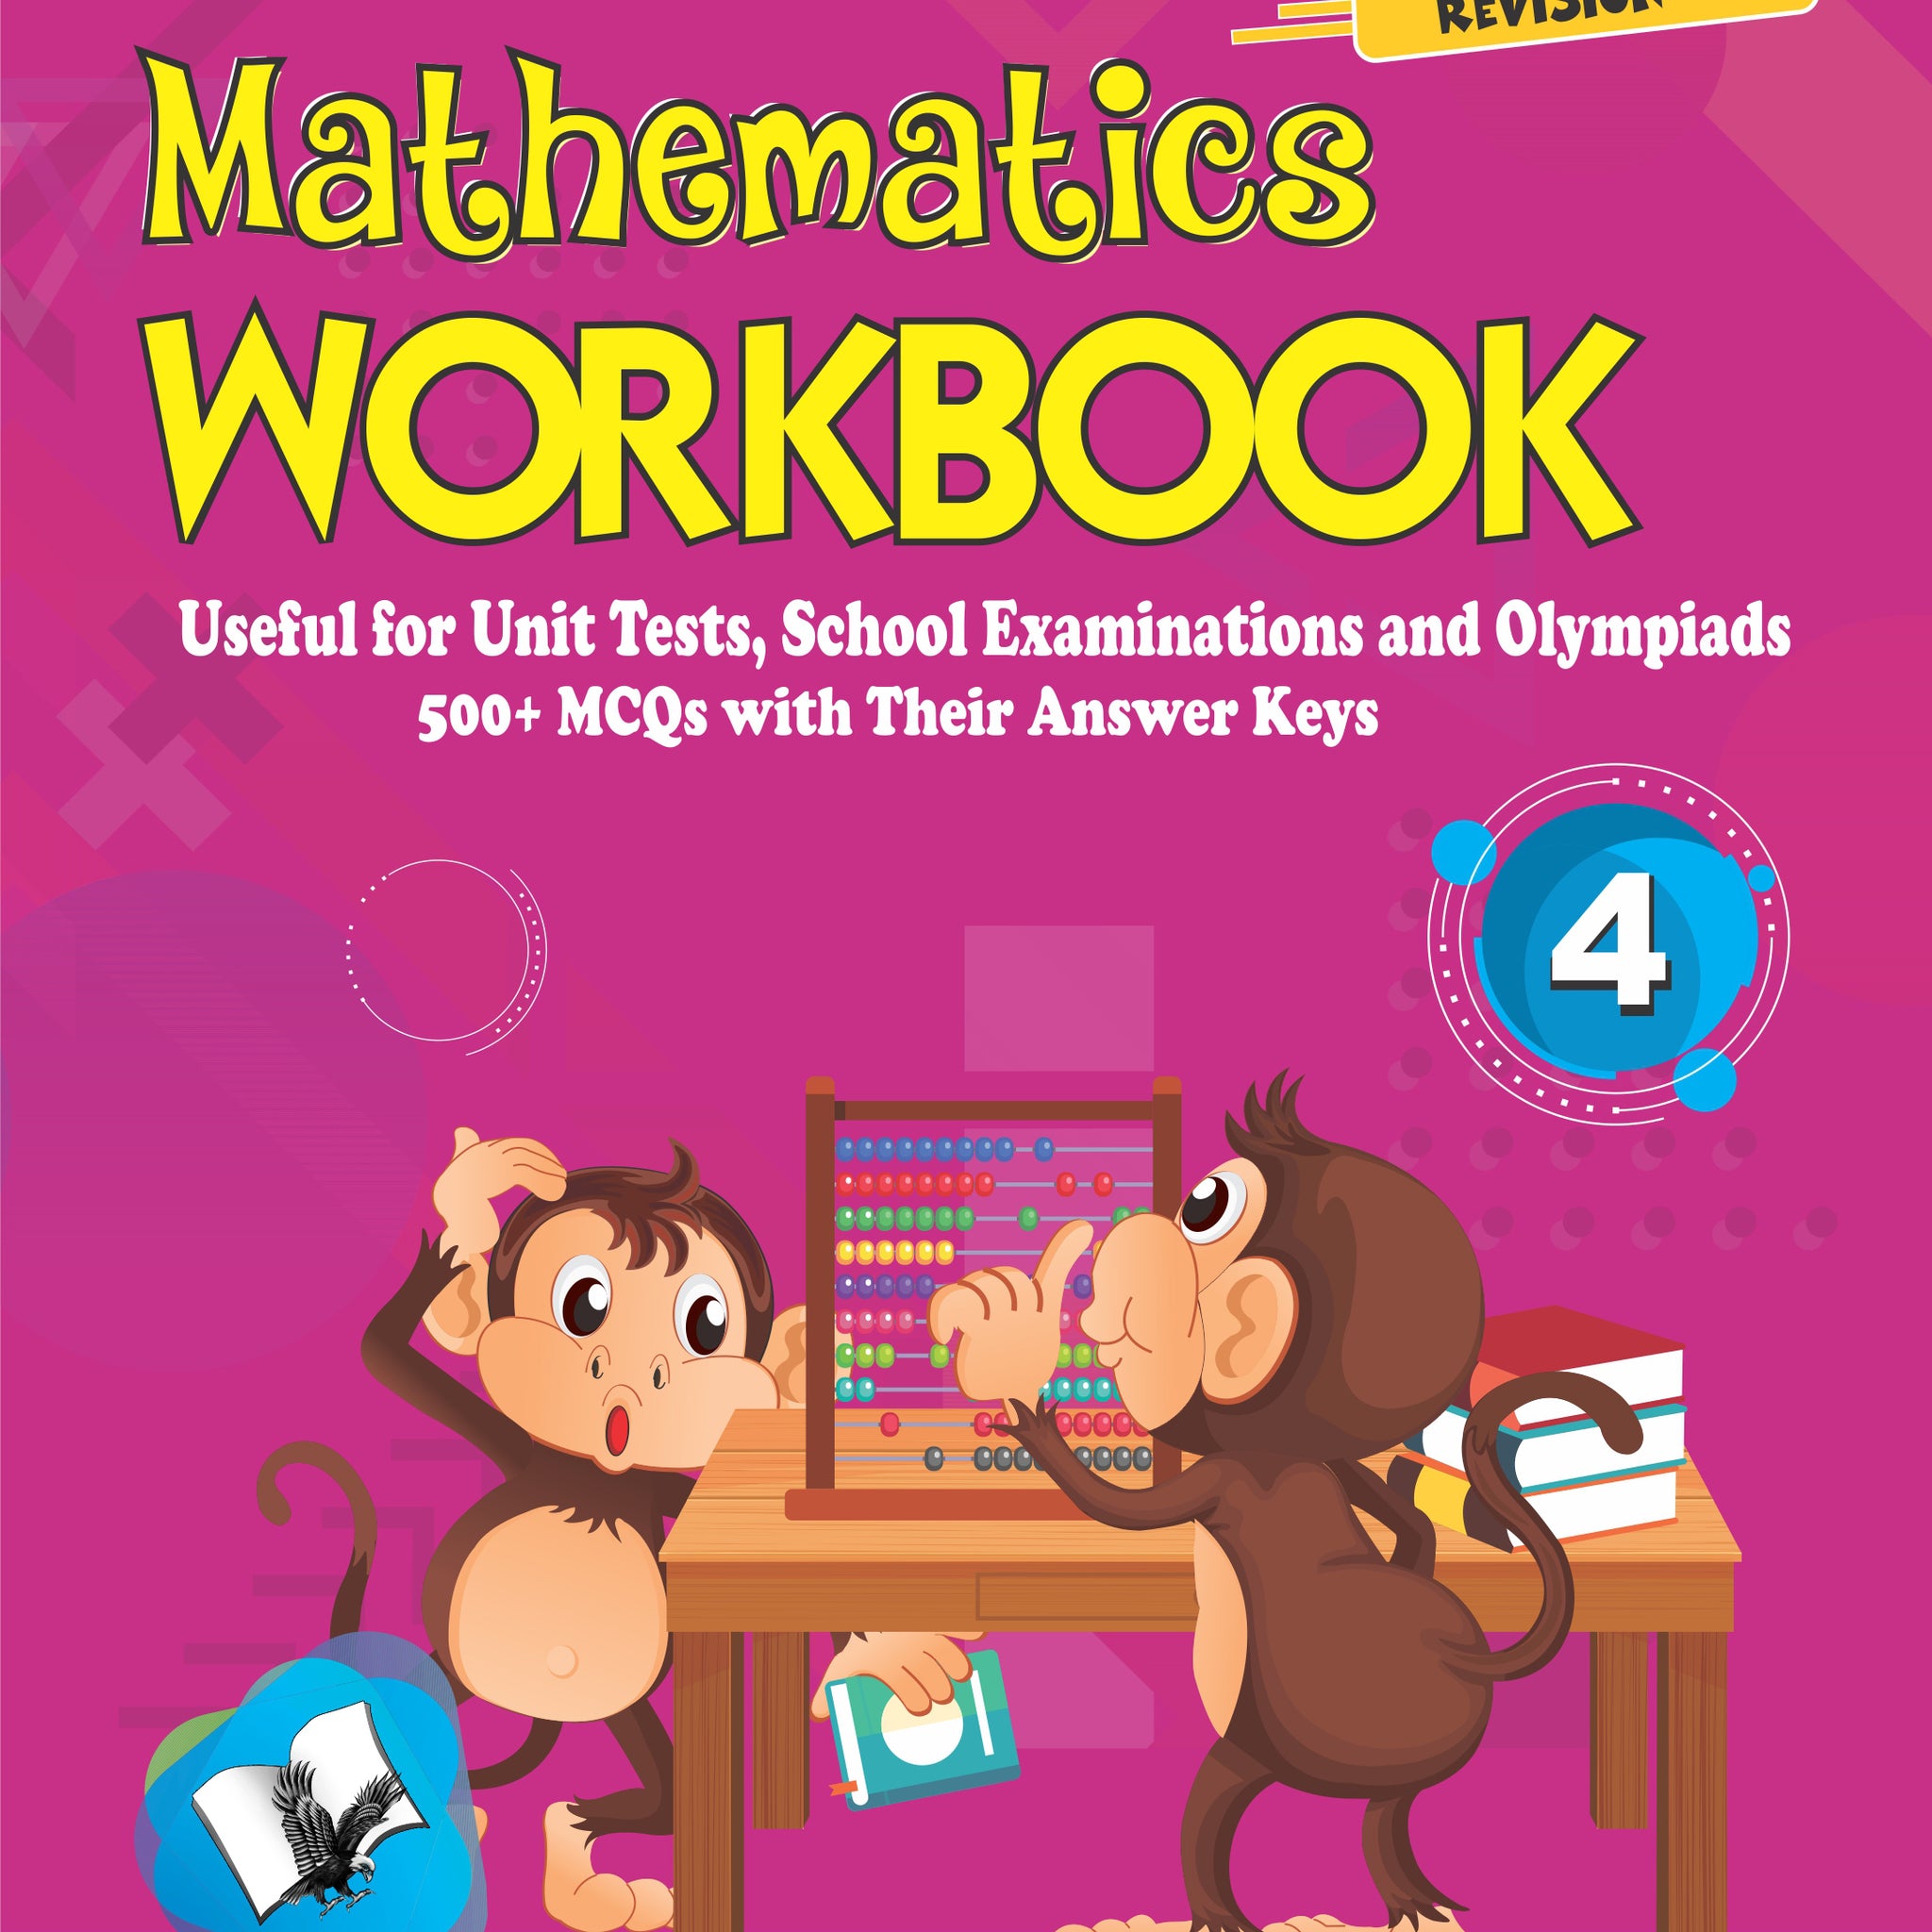 Mathematics Workbook Class 4